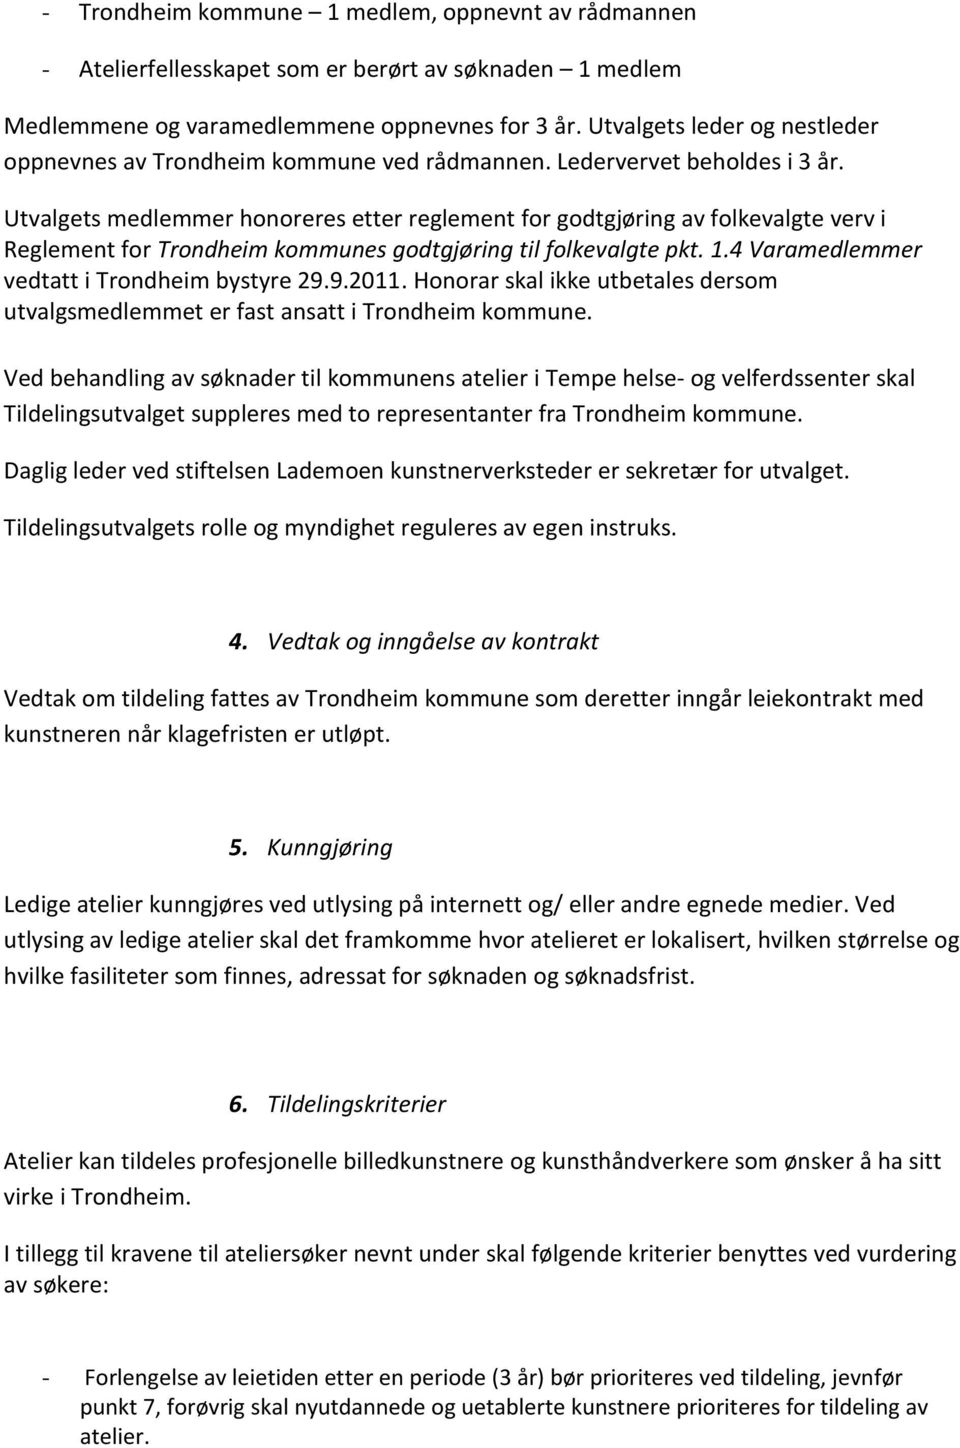 Utvalgets medlemmer honoreres etter reglement for godtgjøring av folkevalgte verv i Reglement for Trondheim kommunes godtgjøring til folkevalgte pkt. 1.4 Varamedlemmer vedtatt i Trondheim bystyre 29.